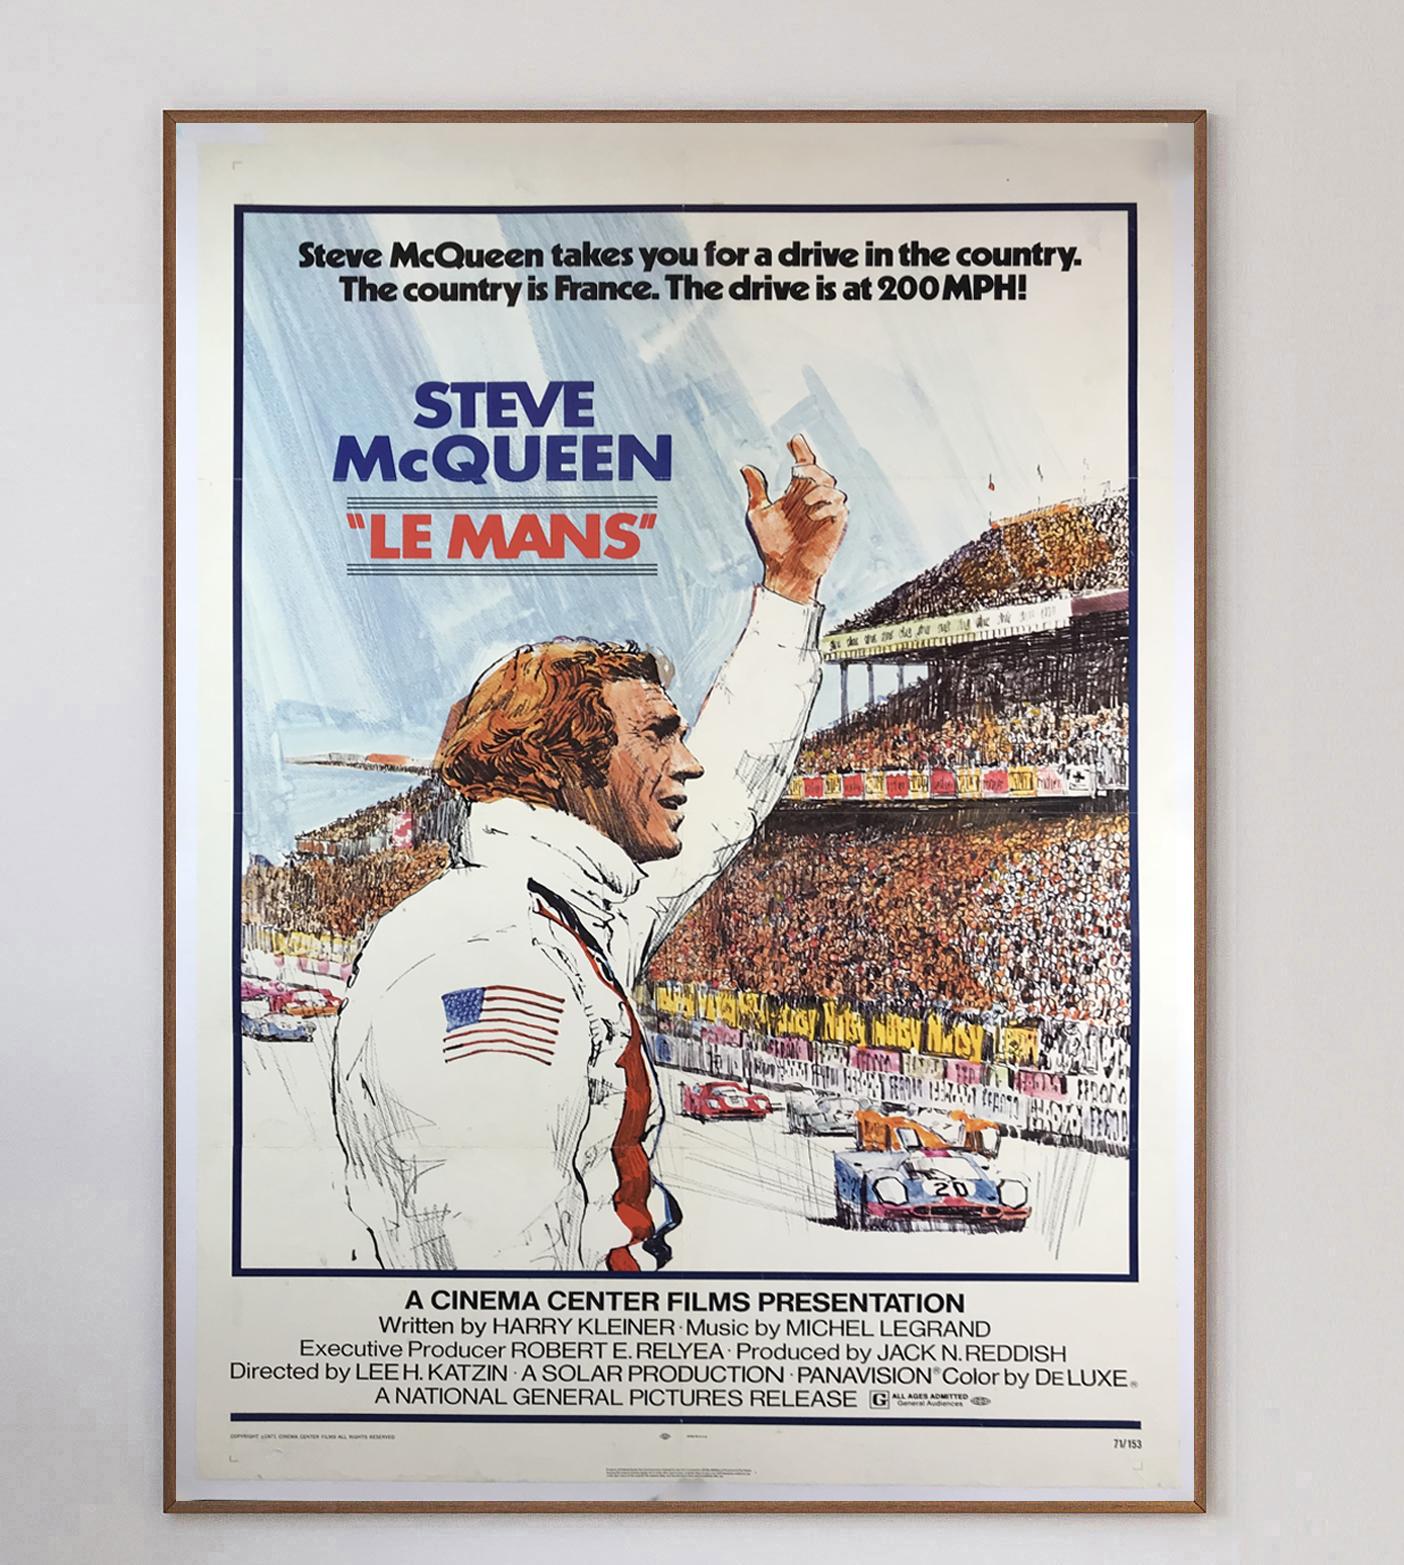 Le Mans wurde 1971 mit echten Aufnahmen des Rennens von 1970 veröffentlicht und zeigt Steve McQueen am Steuer eines Porsche 917K. Die 24 Heures du Mans oder 24 Stunden von Le Mans sind das älteste aktive Sportwagenrennen der Welt, bei dem der Sieger